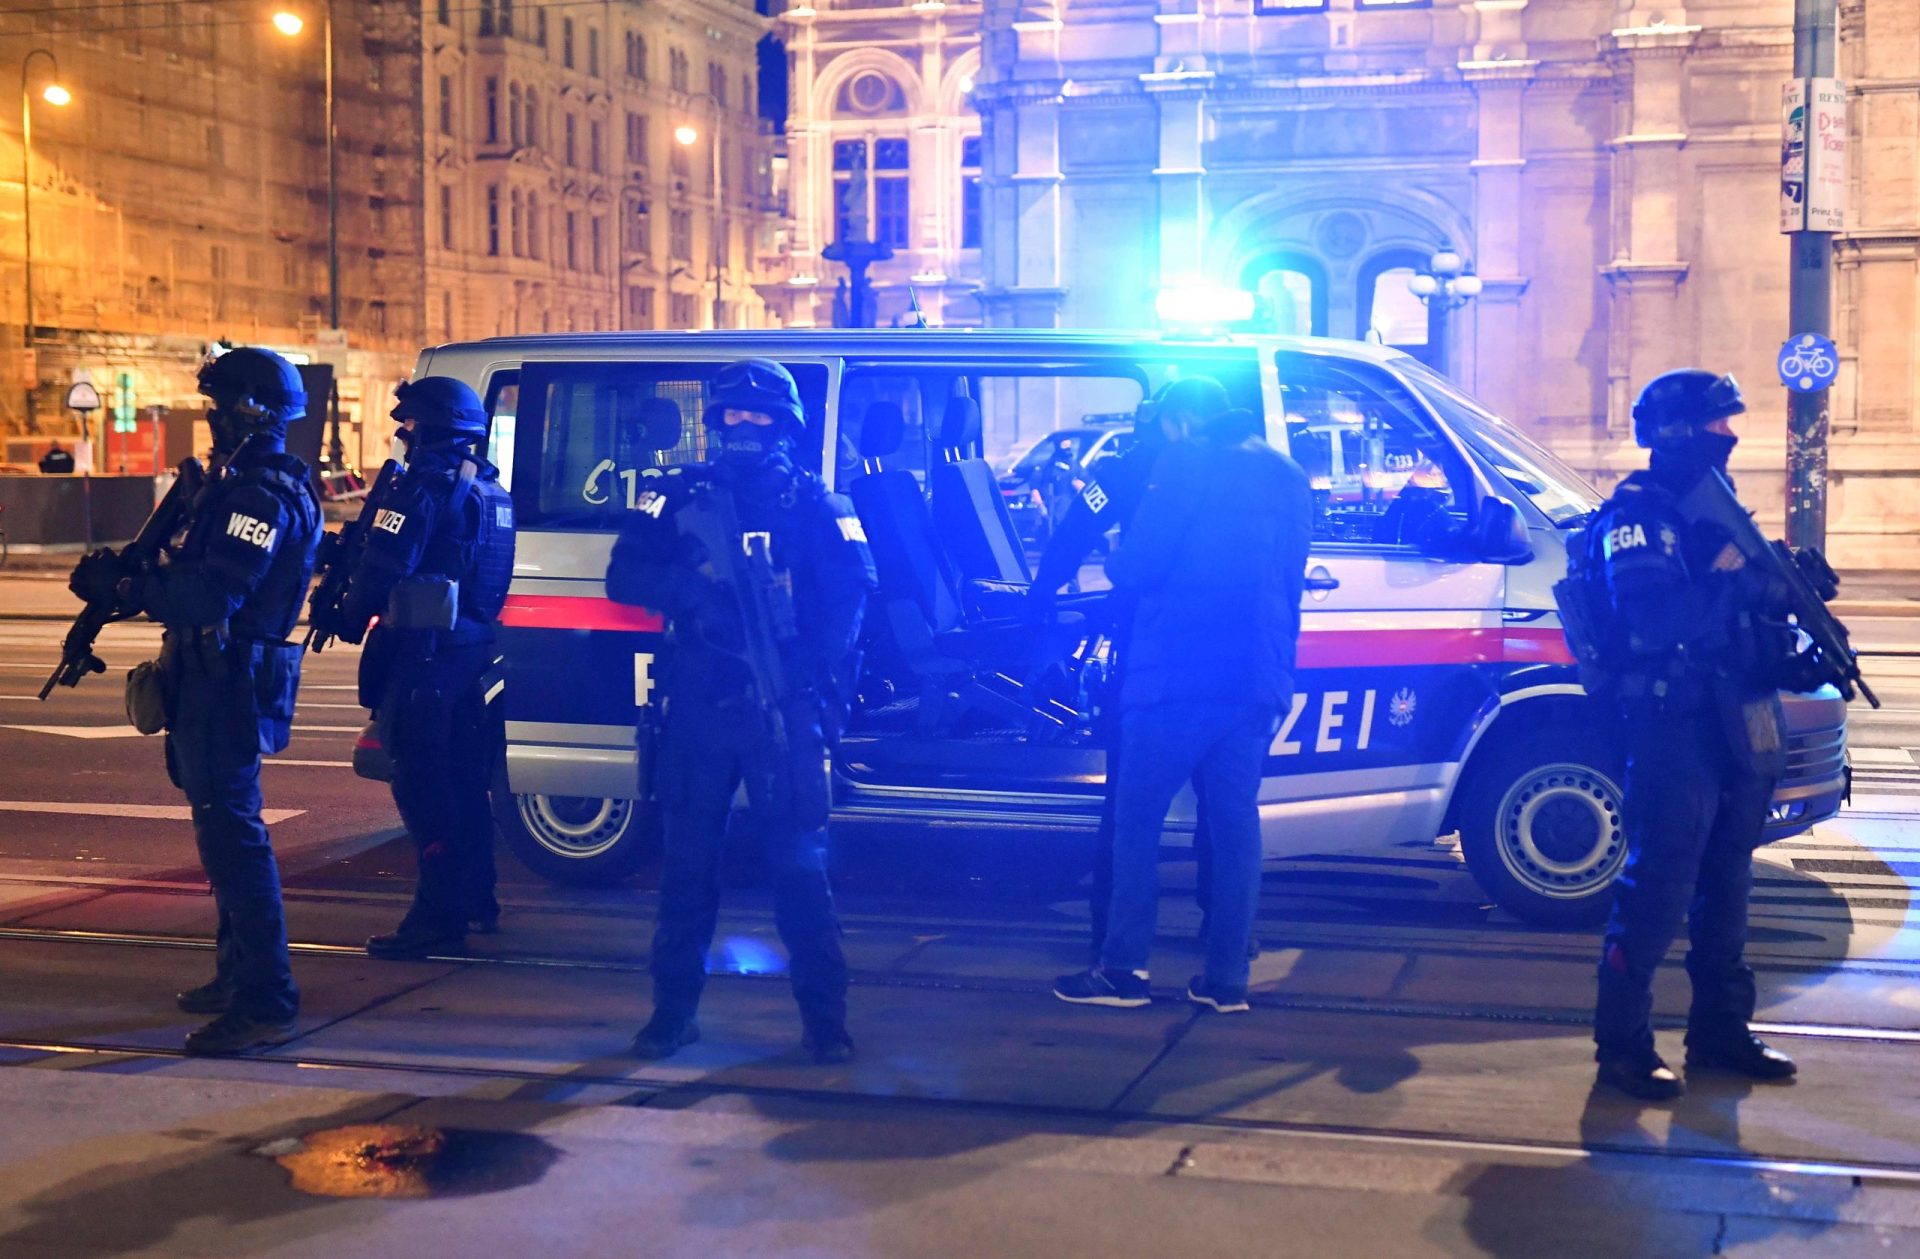 O que é que já se sabe do atacante morto em Viena? Tinha 20 anos e era seguidor do estado islâmico